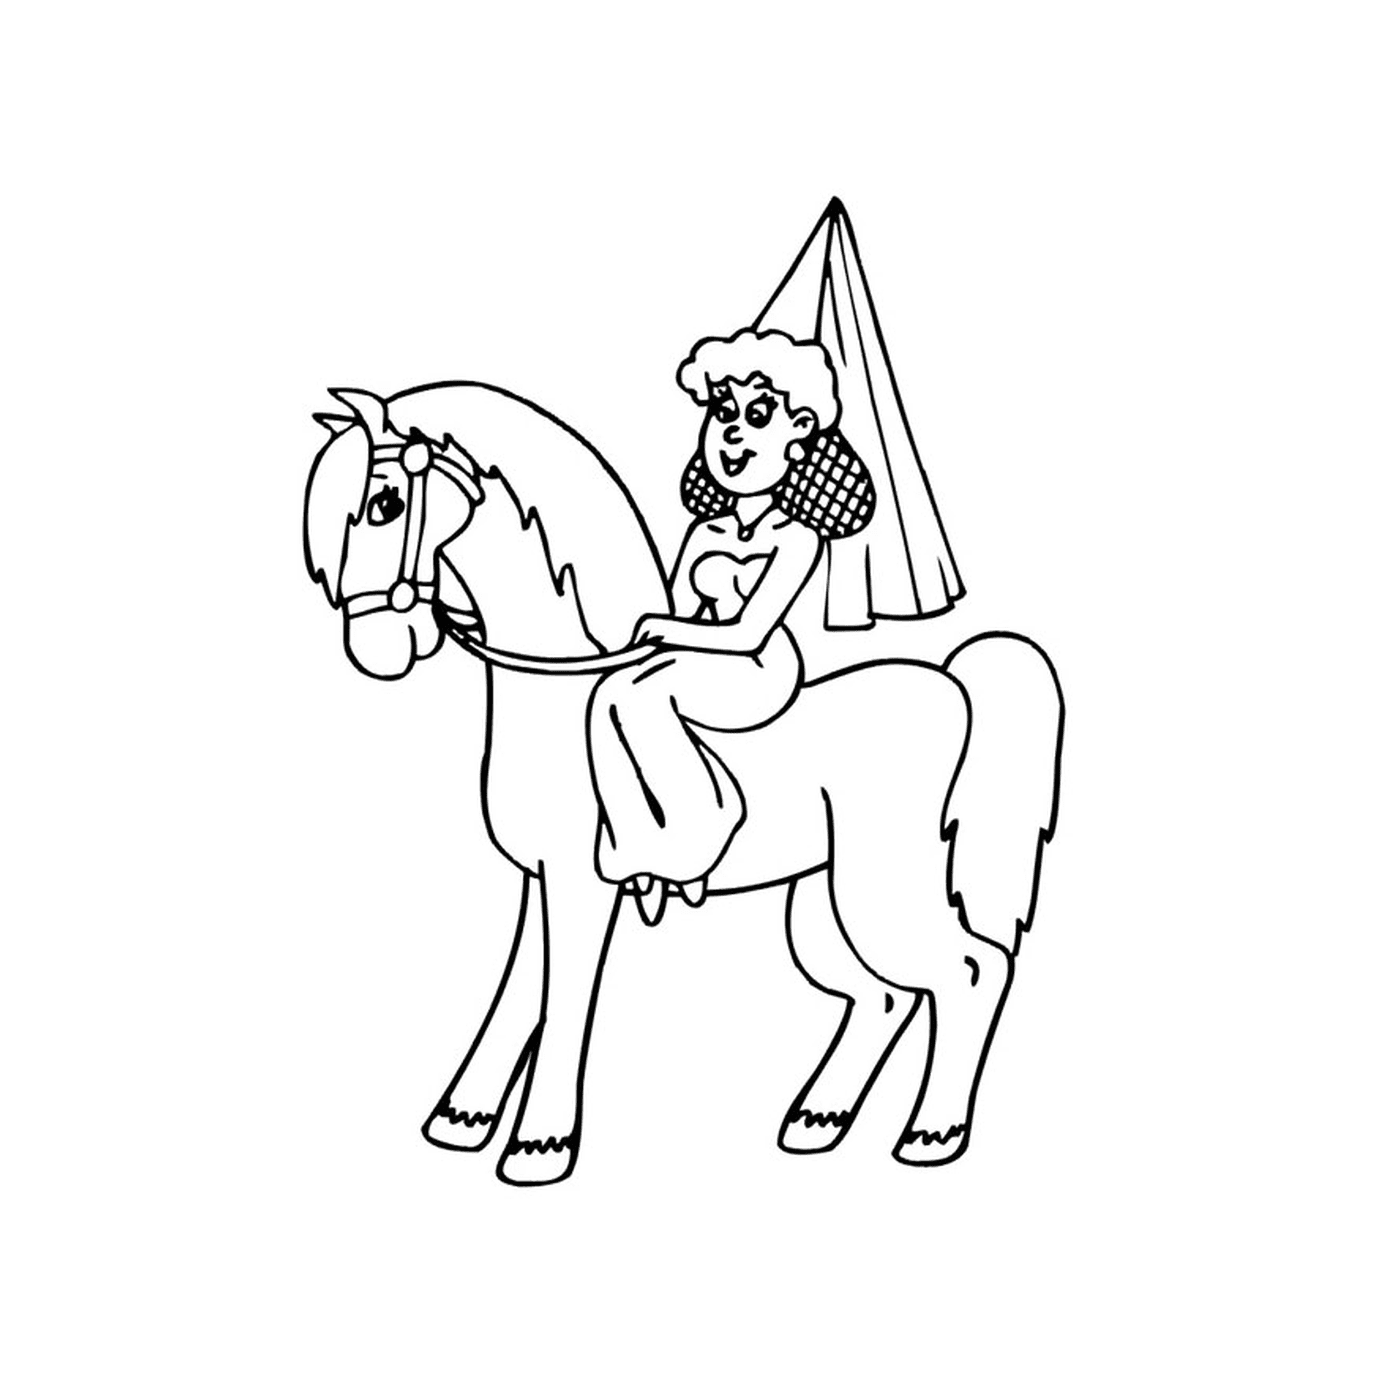  Человек, сидящий на лошади принцессы 